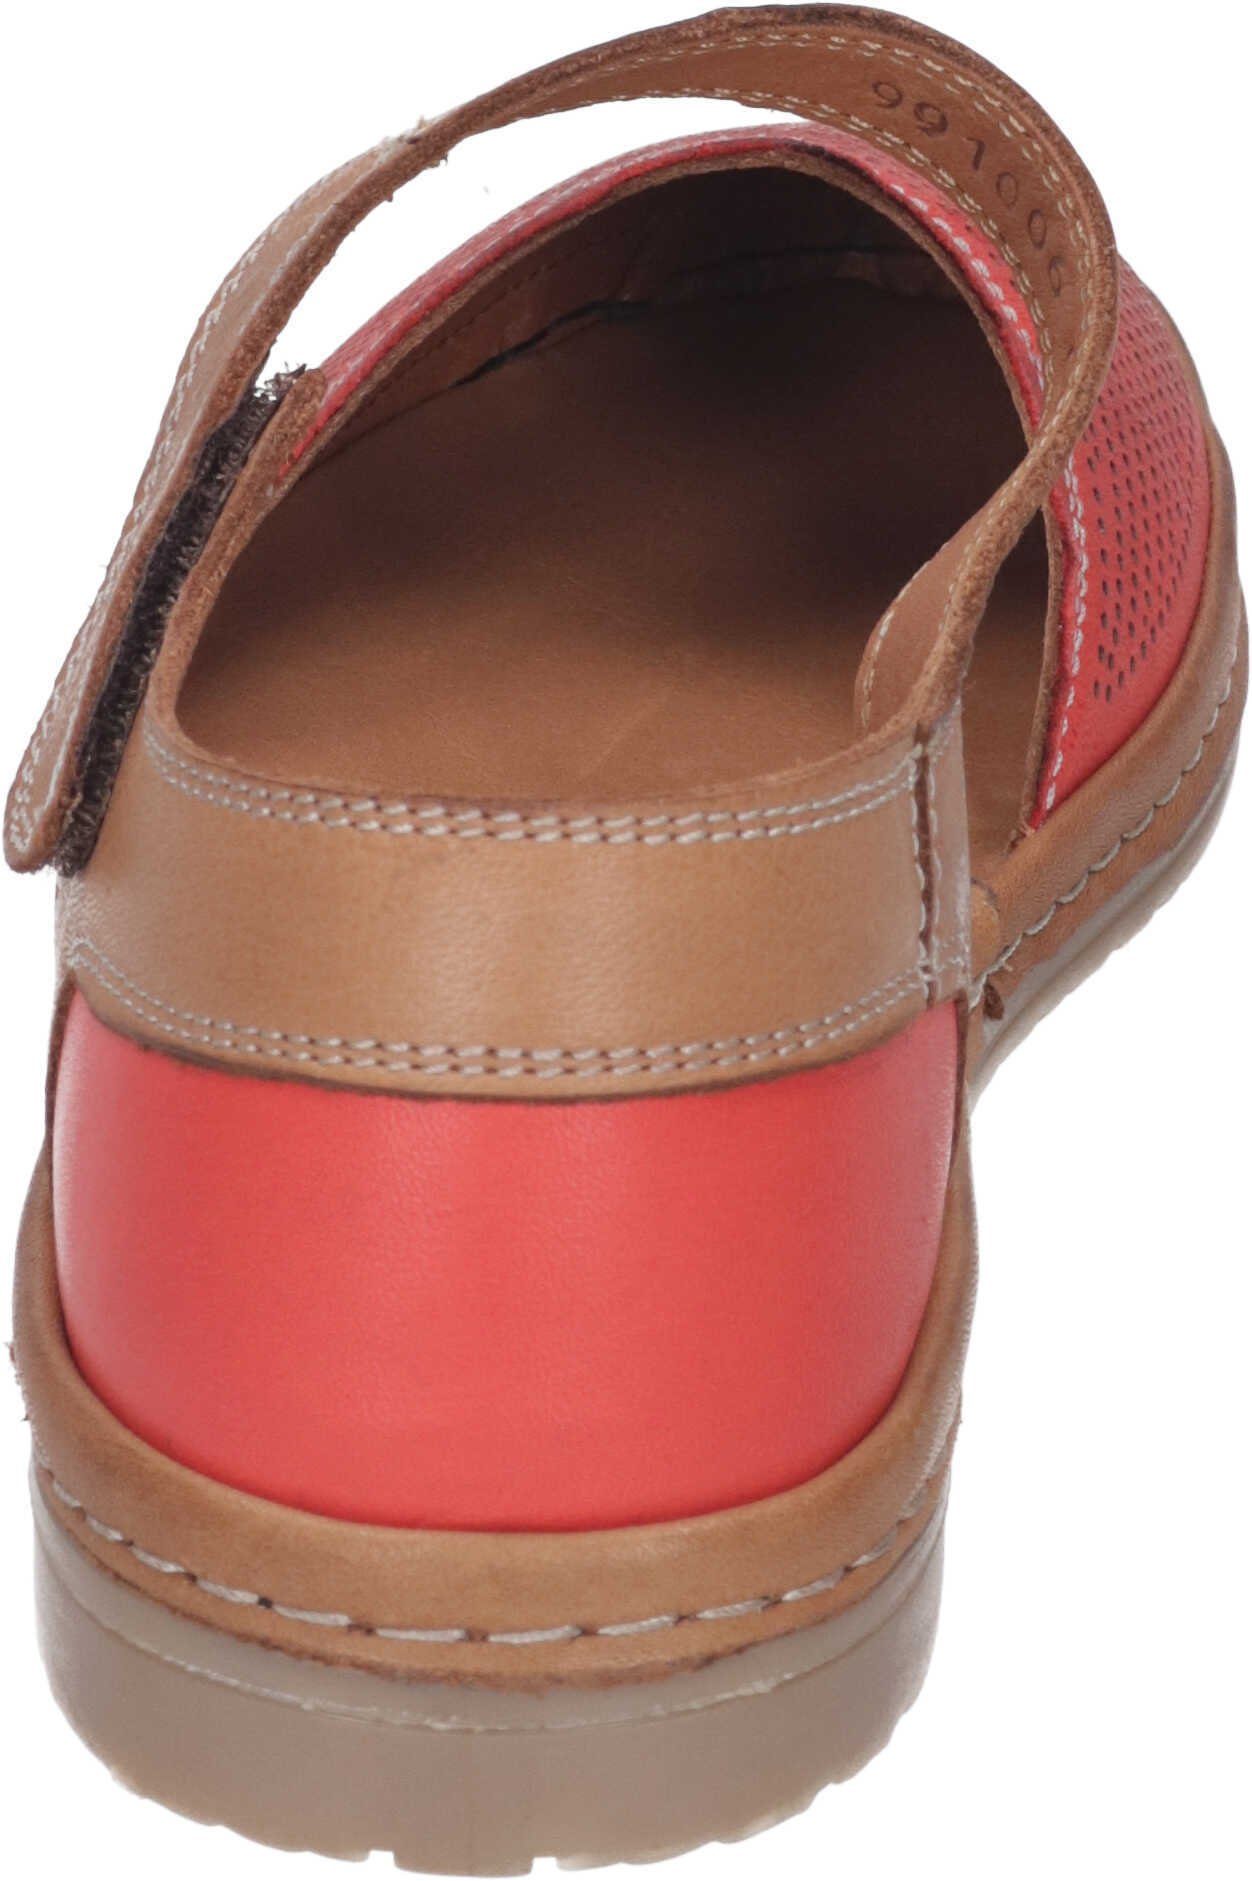 Manitu rot aus Sandalette echtem Sandalen Leder